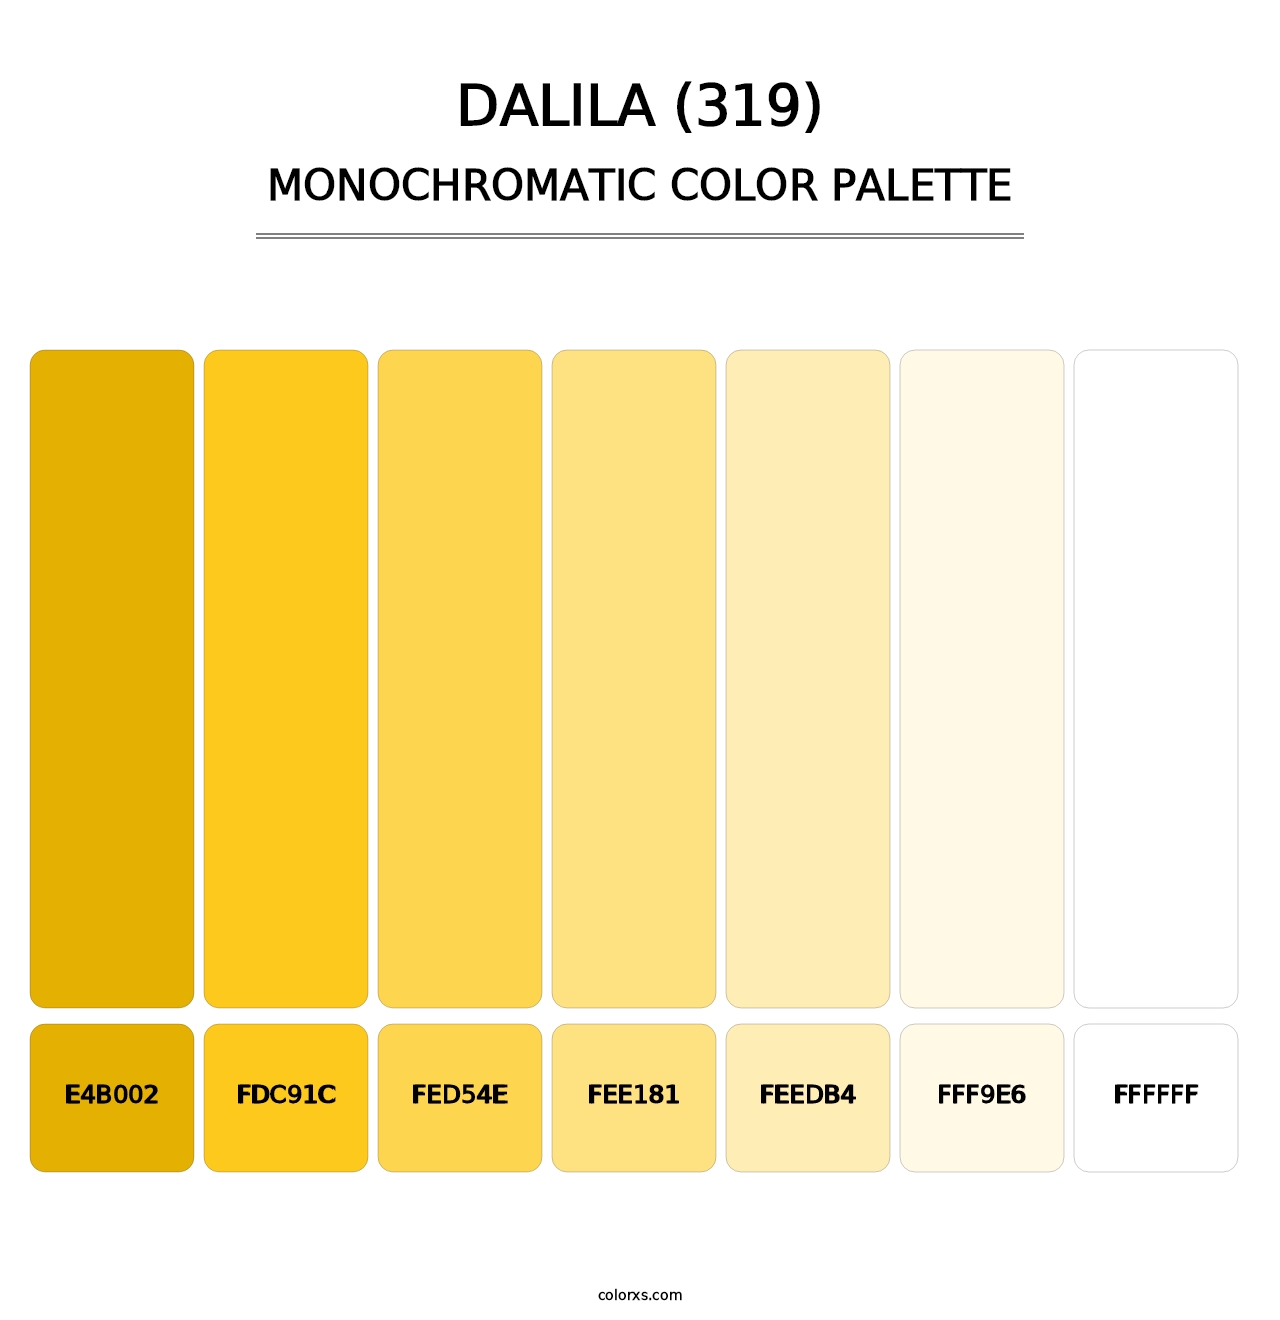 Dalila (319) - Monochromatic Color Palette